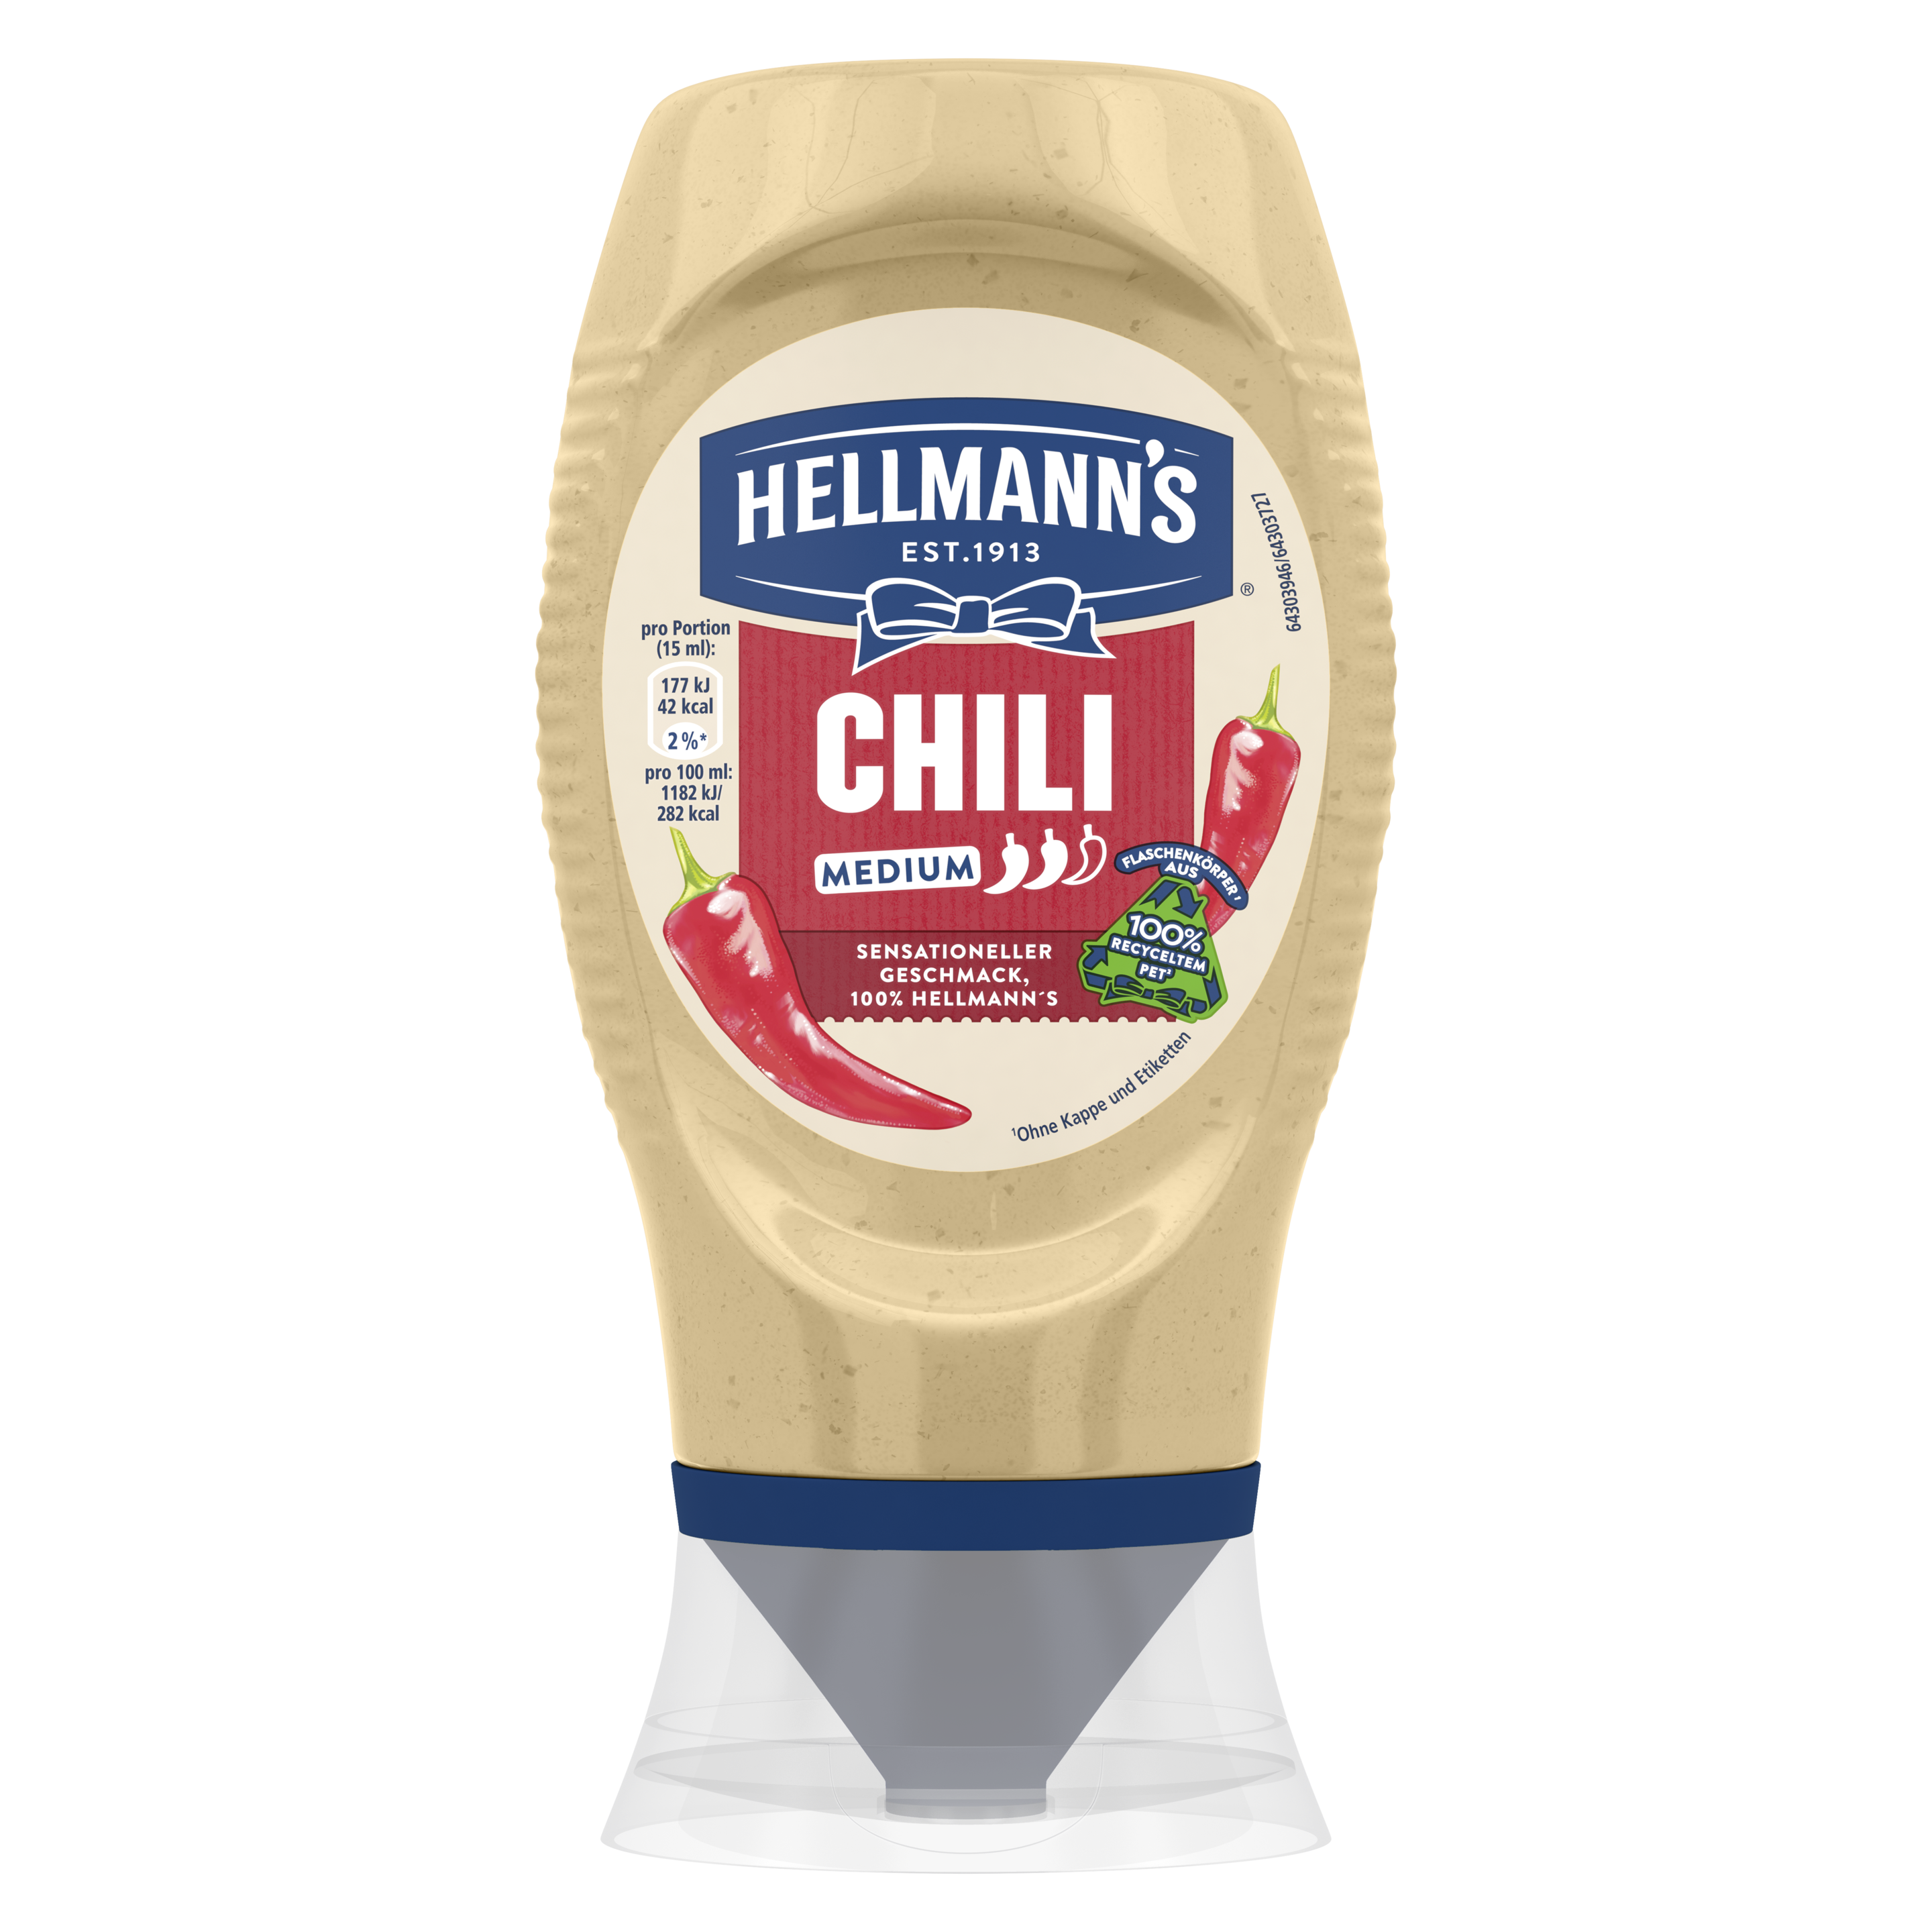 Hellmann's ChilI im Squeezer